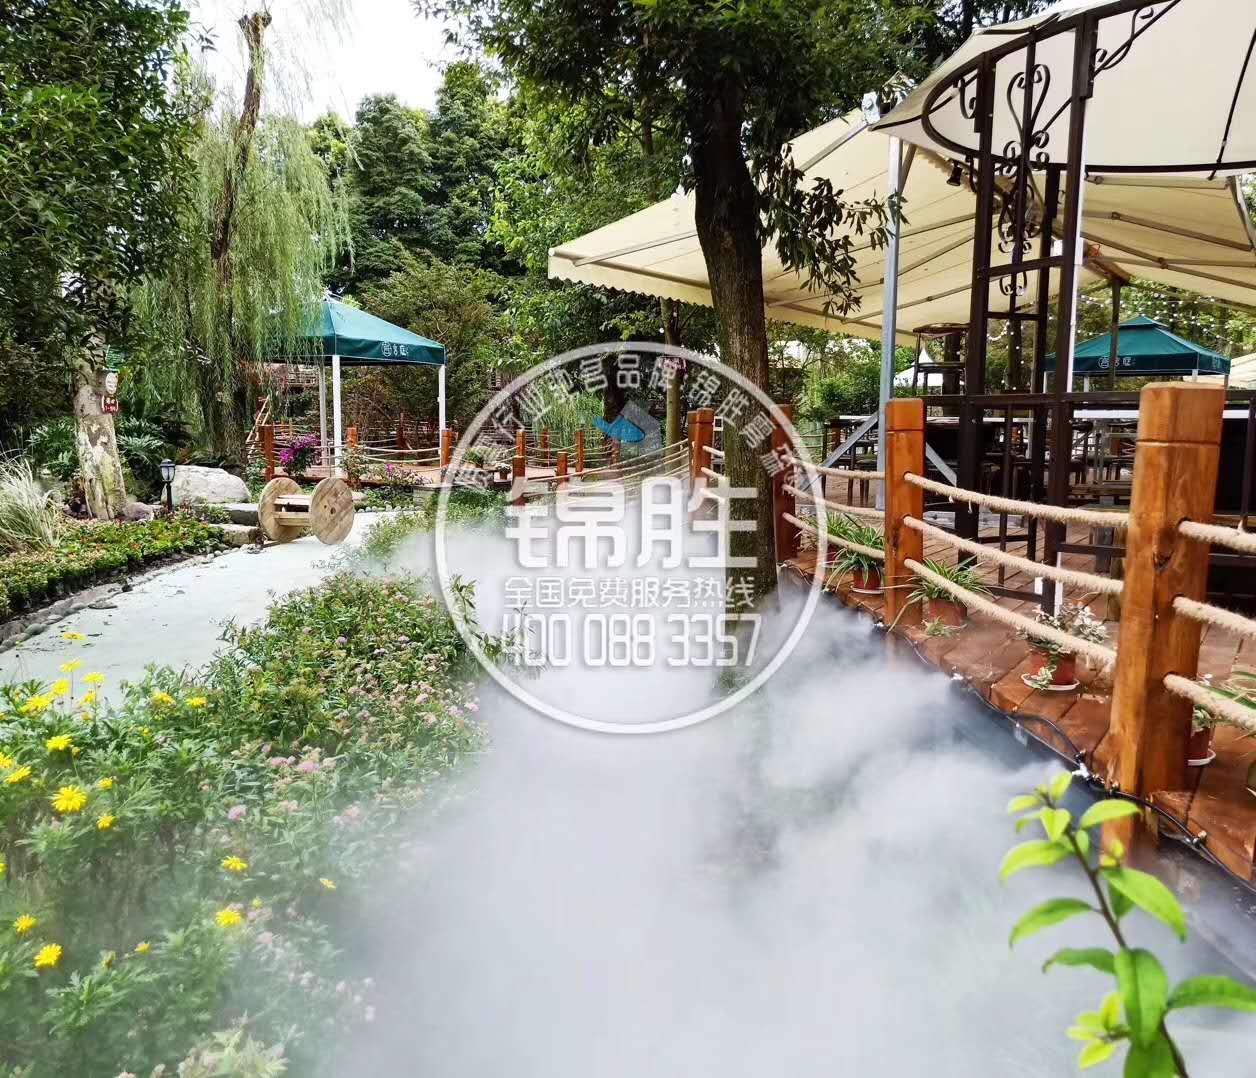 成都华阳酒店喷雾造景园林喷雾景观